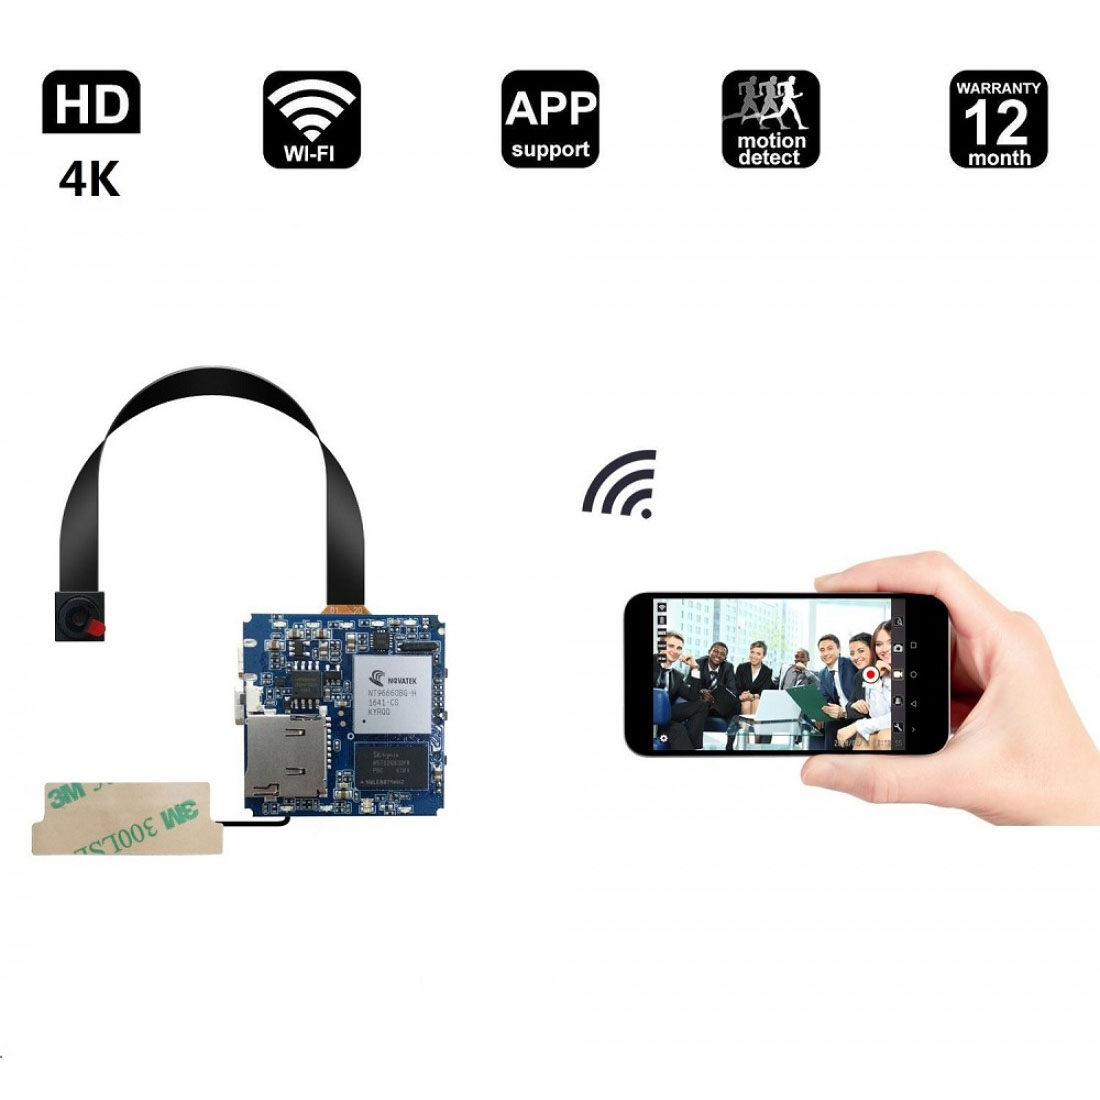 Mini kamera 4K, ukryta kamera Full 1080p HD, bezprzewodowa sieć WIFI [wykrywanie ruchu, kamera DIY, kontrola aplikacji] Kamera niania | Dom, dzieci, dziecko, kamera do monitorowania zwierząt